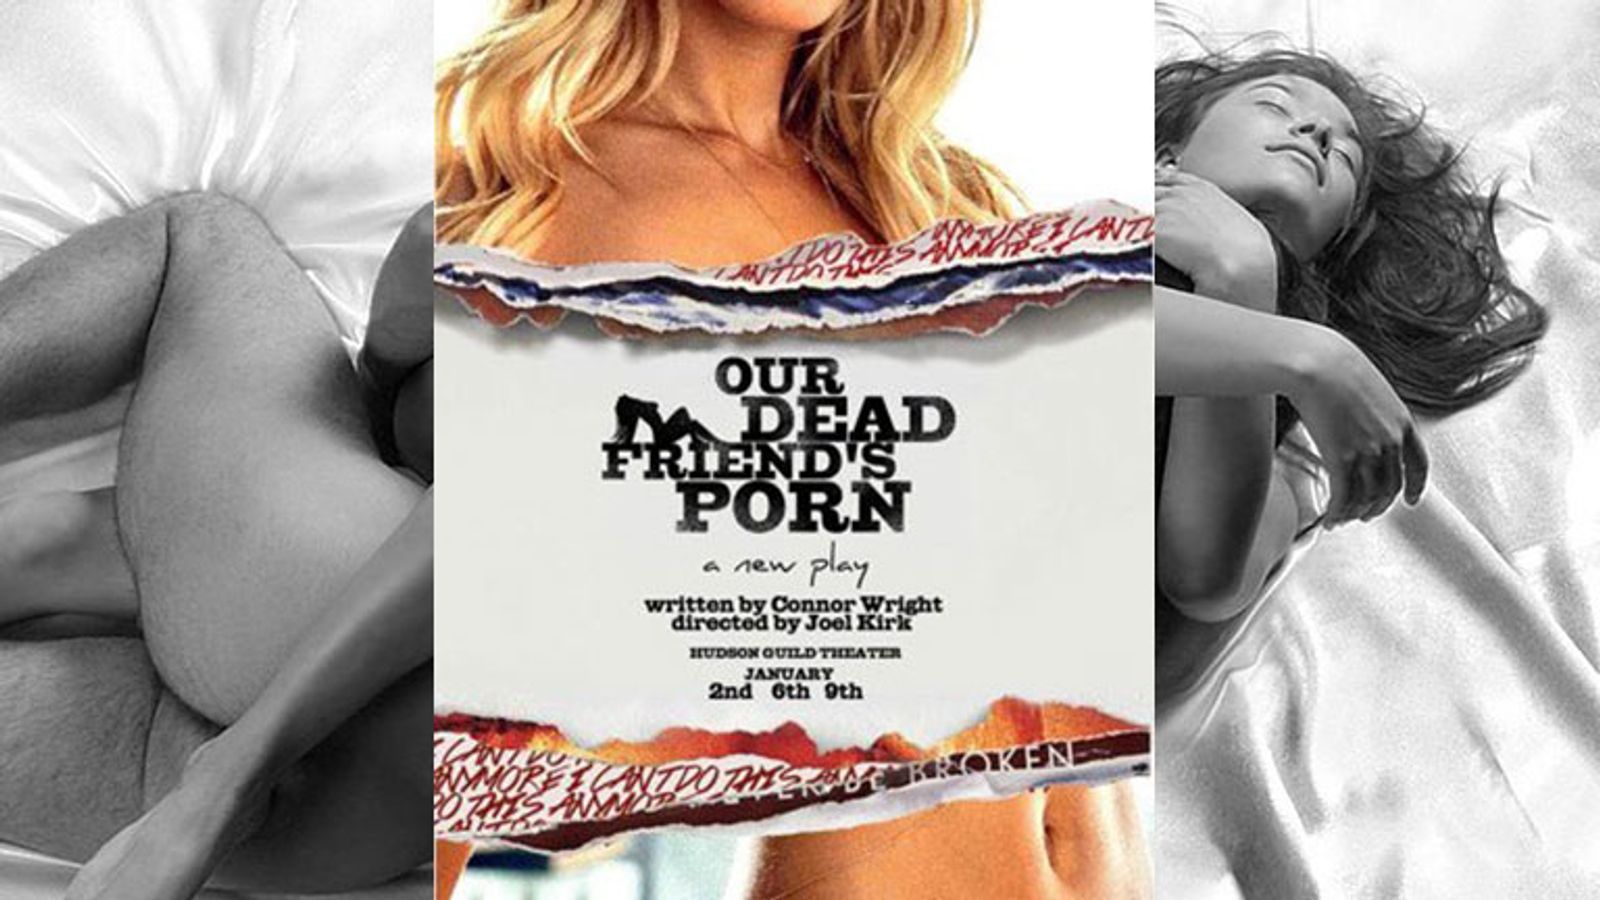 New York Theatre Festival to Present 'Our Dead Friend's Porn'